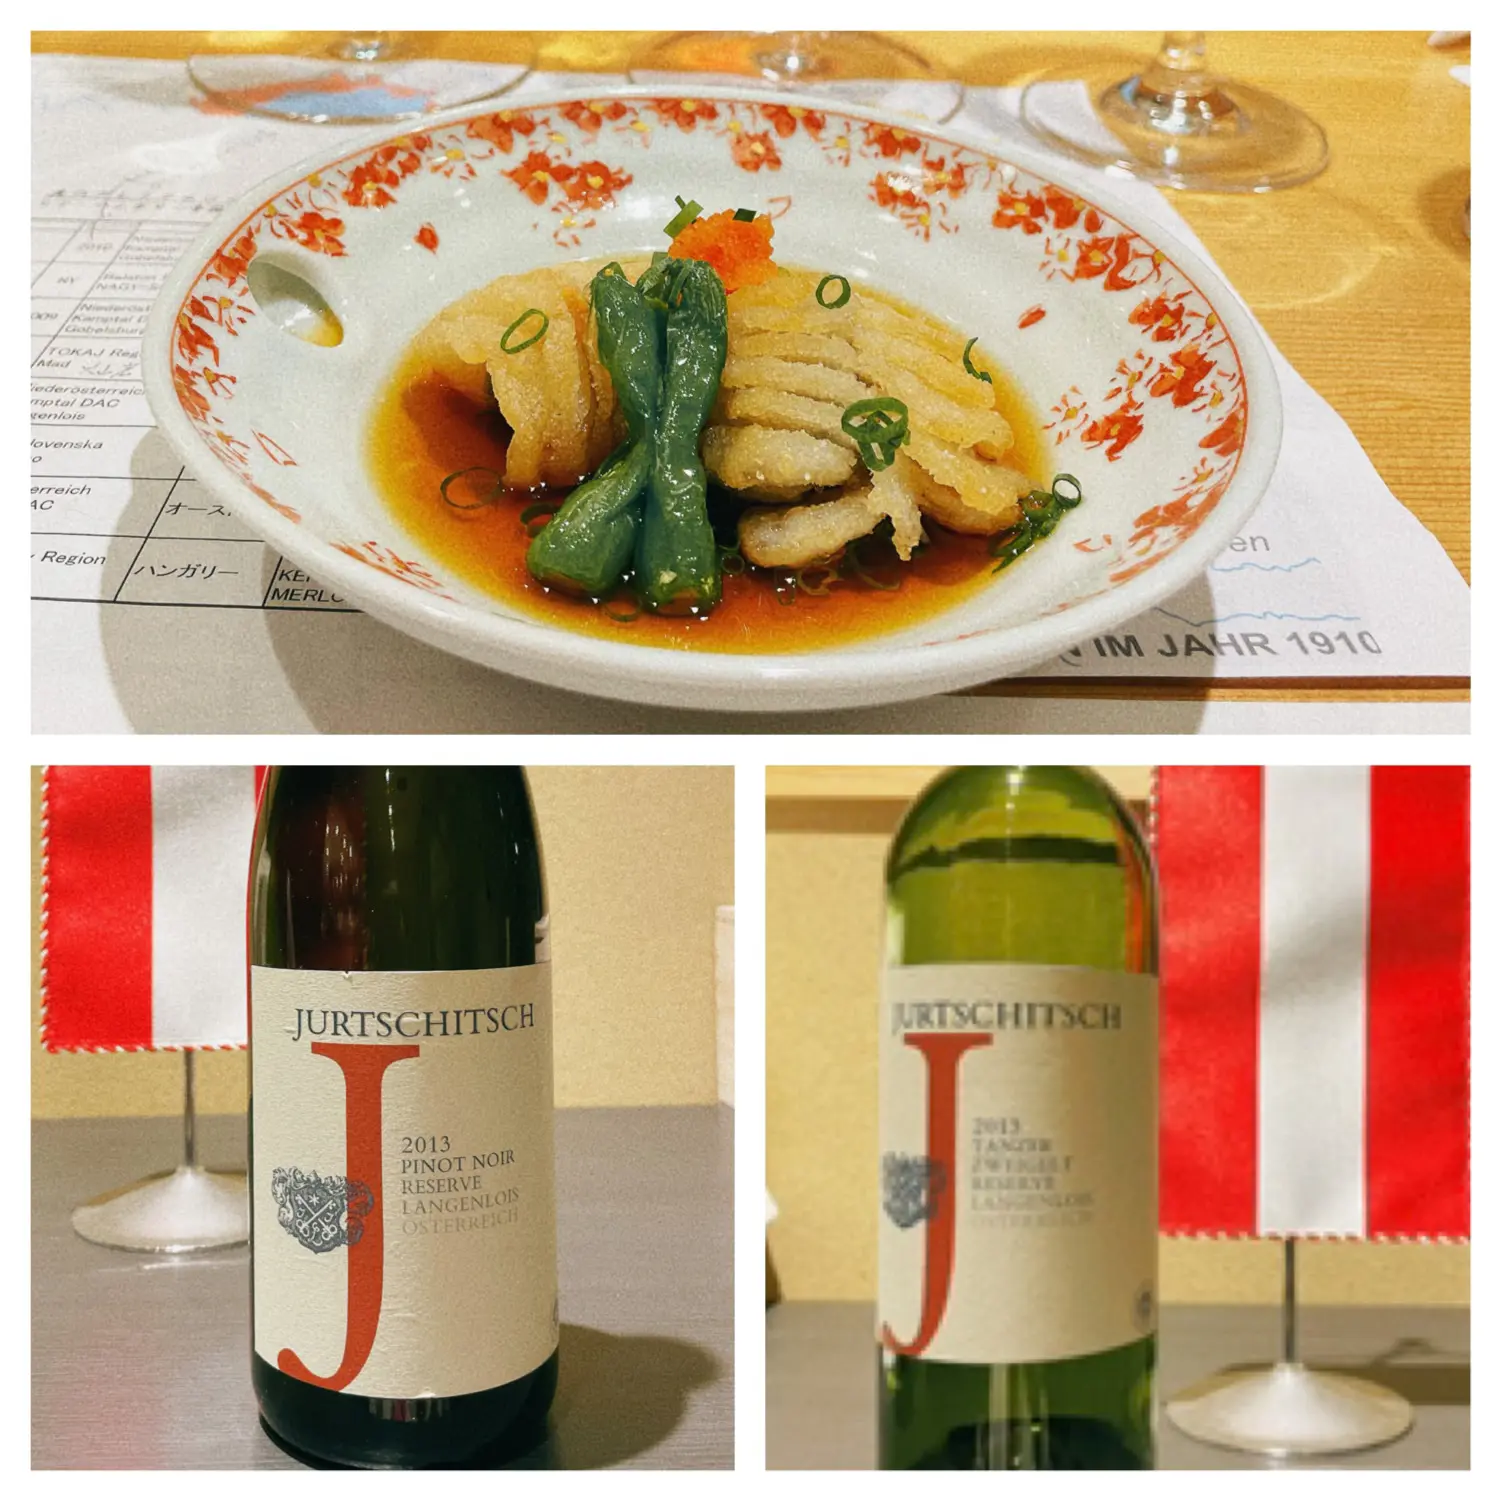 オーストリア、ハンガリーのワインとお寿司のマリアージュを楽しむ会 in 銀座_1_7